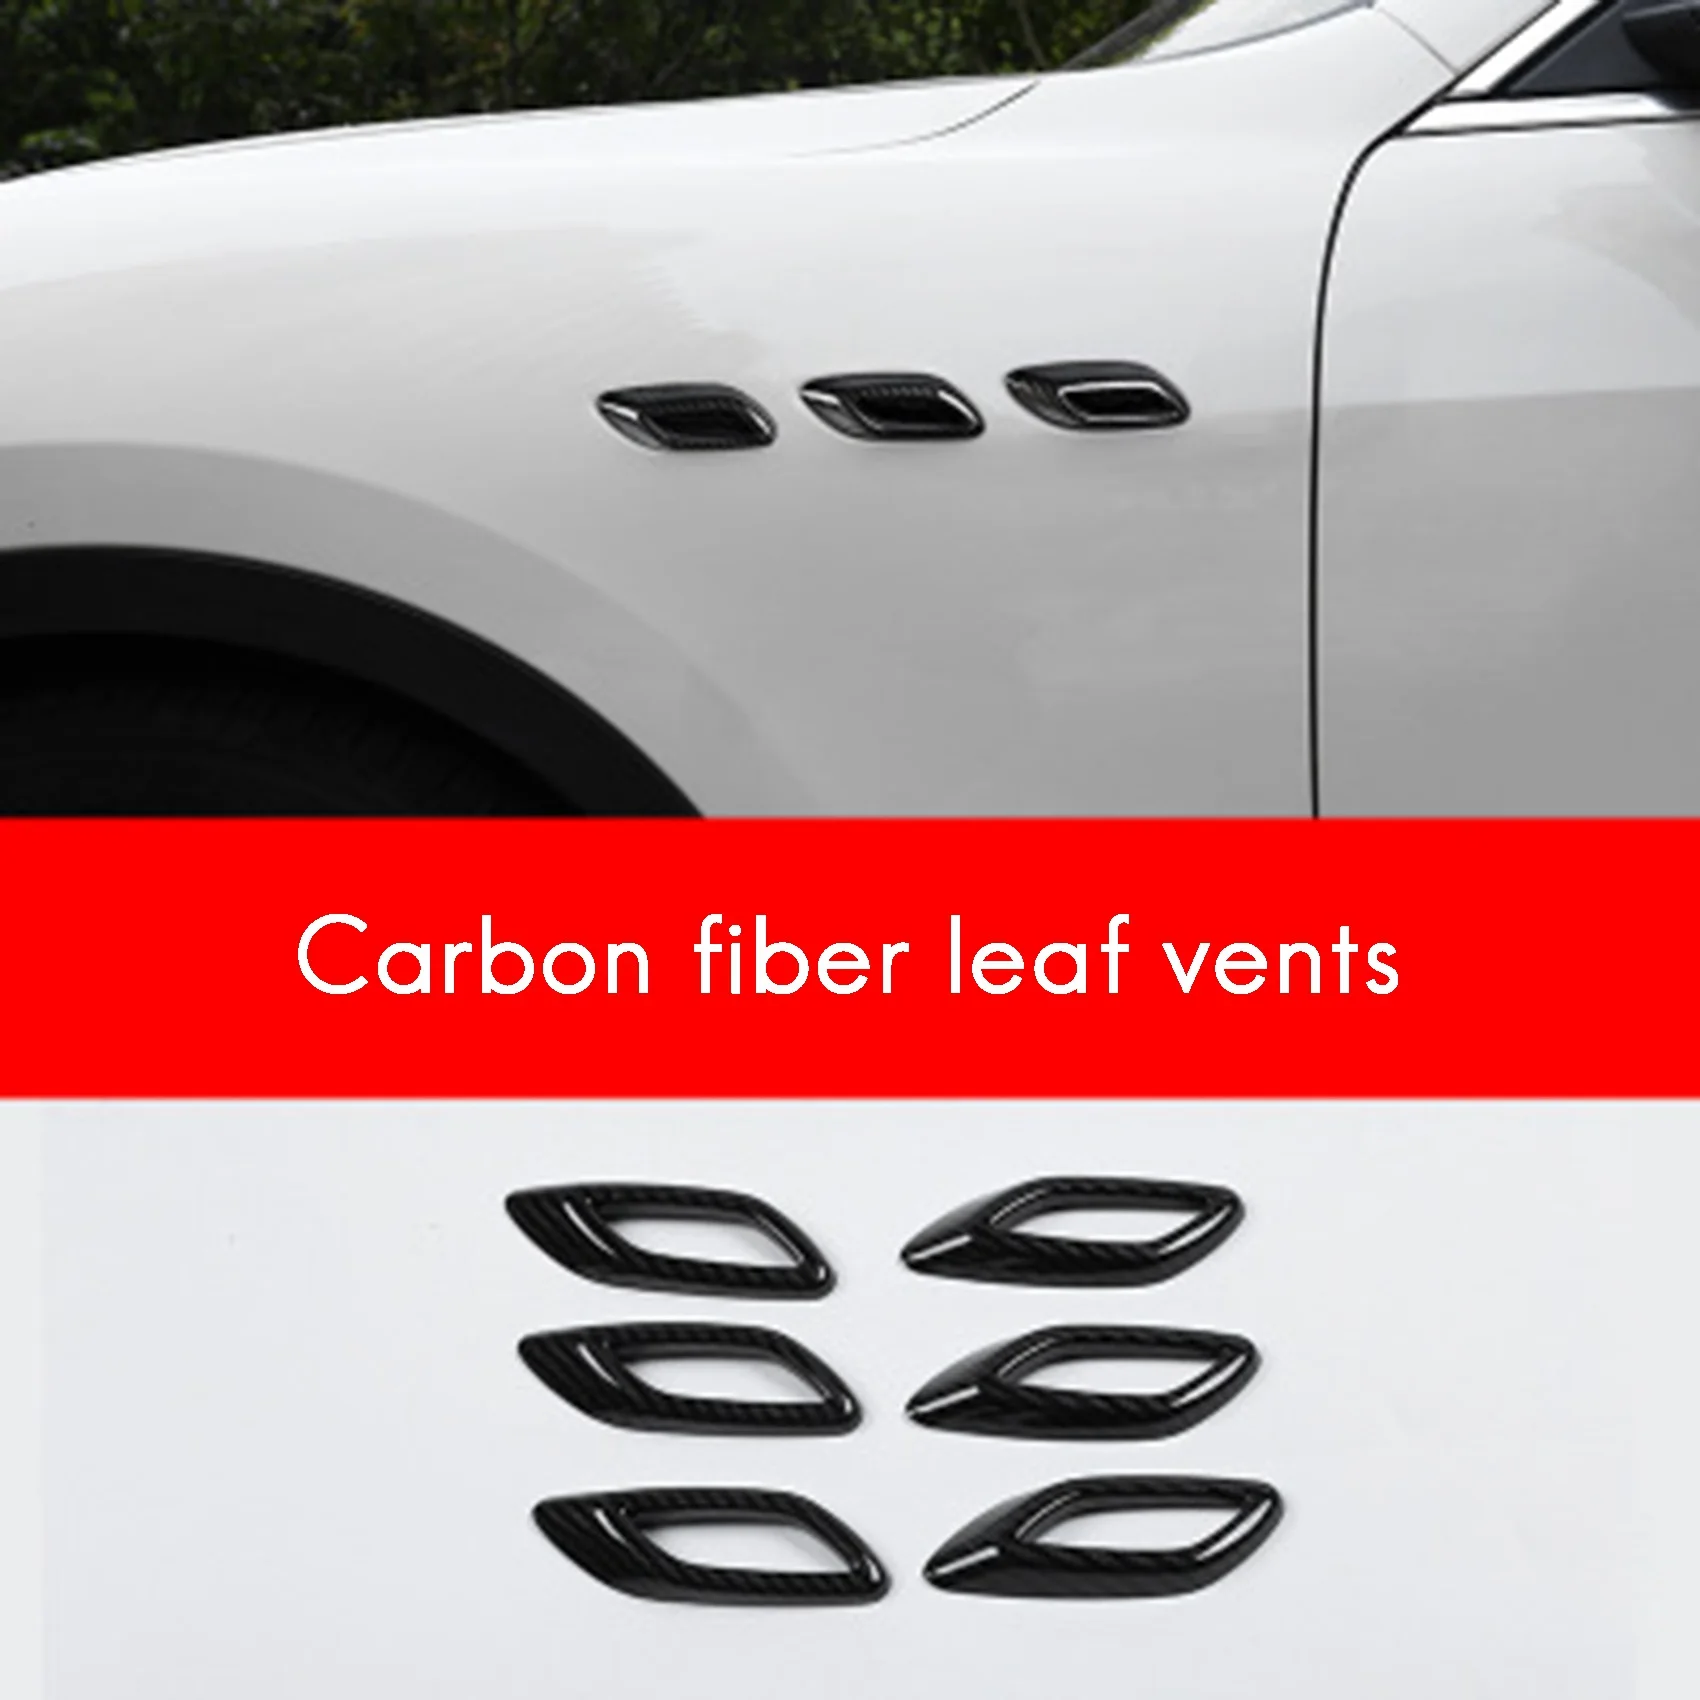 

Боковая крышка из углеродного волокна для вентиляционного отверстия, наружная крышка для Maserati Levante 2016, 2018, 2019, 2020, 2021, ghilii от 2014 до 2021